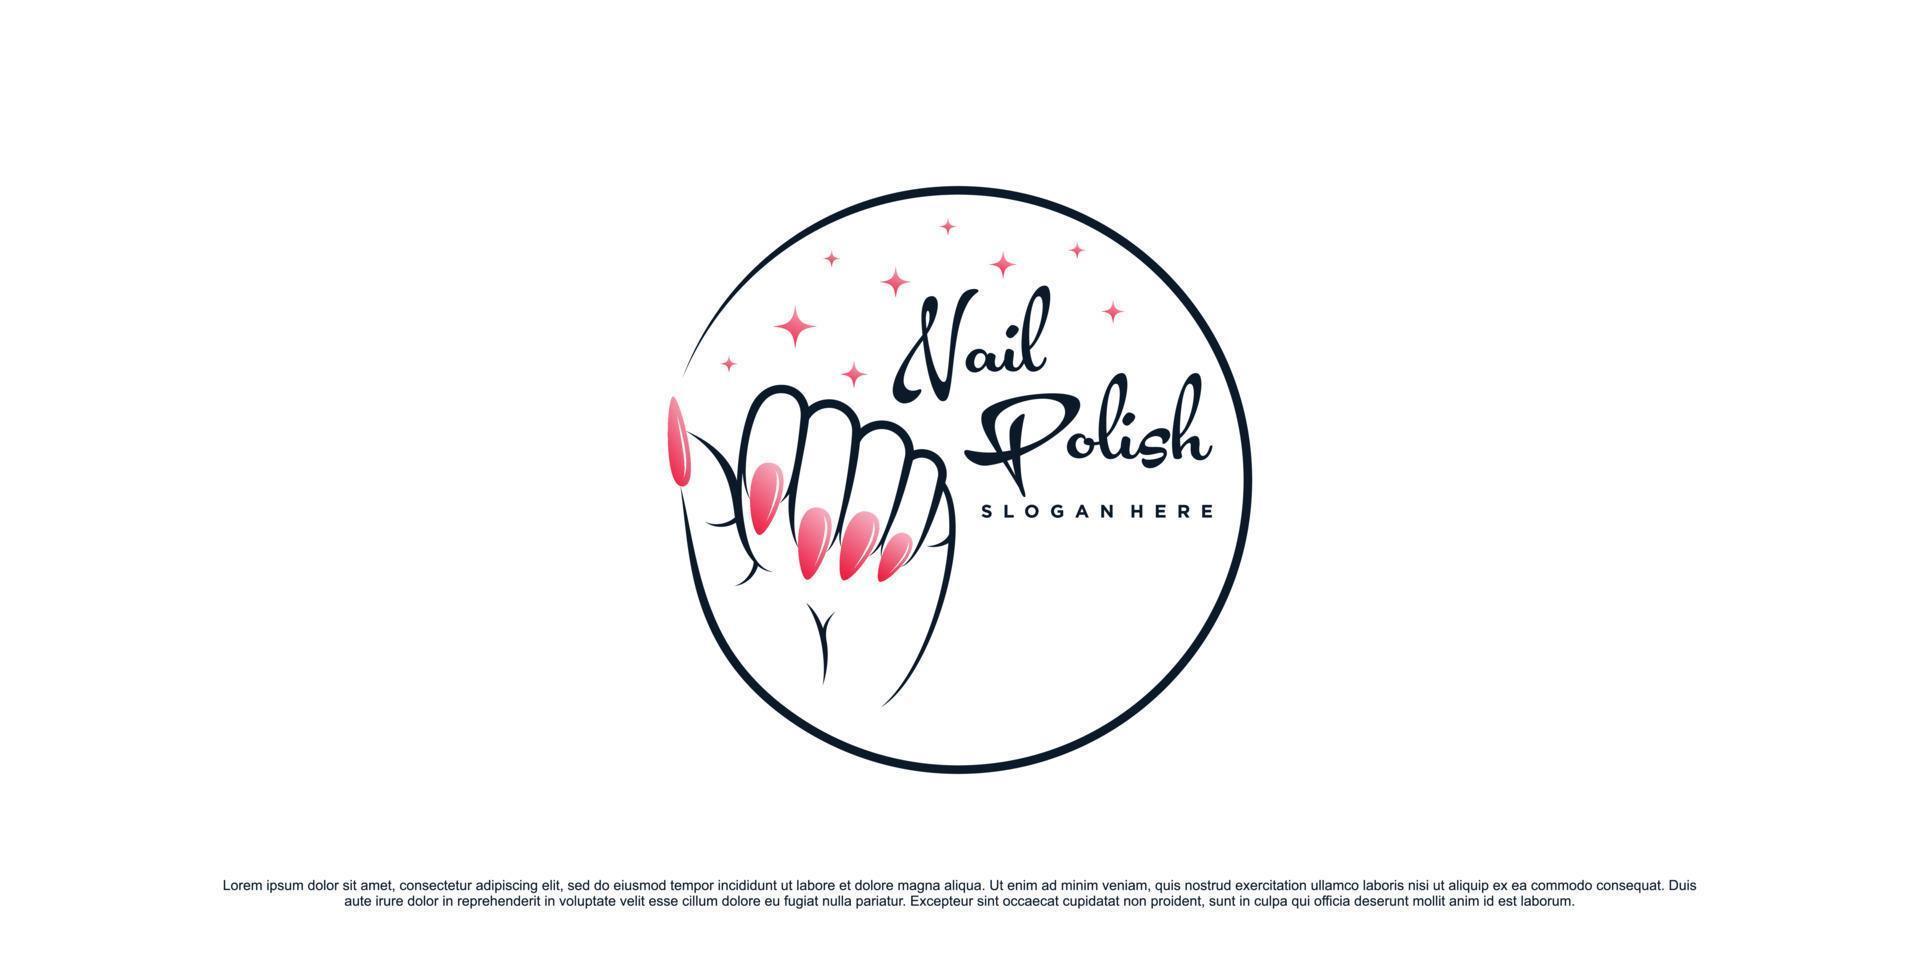 Nail polish logo design template for manicure studio with unique concept Premium Vector